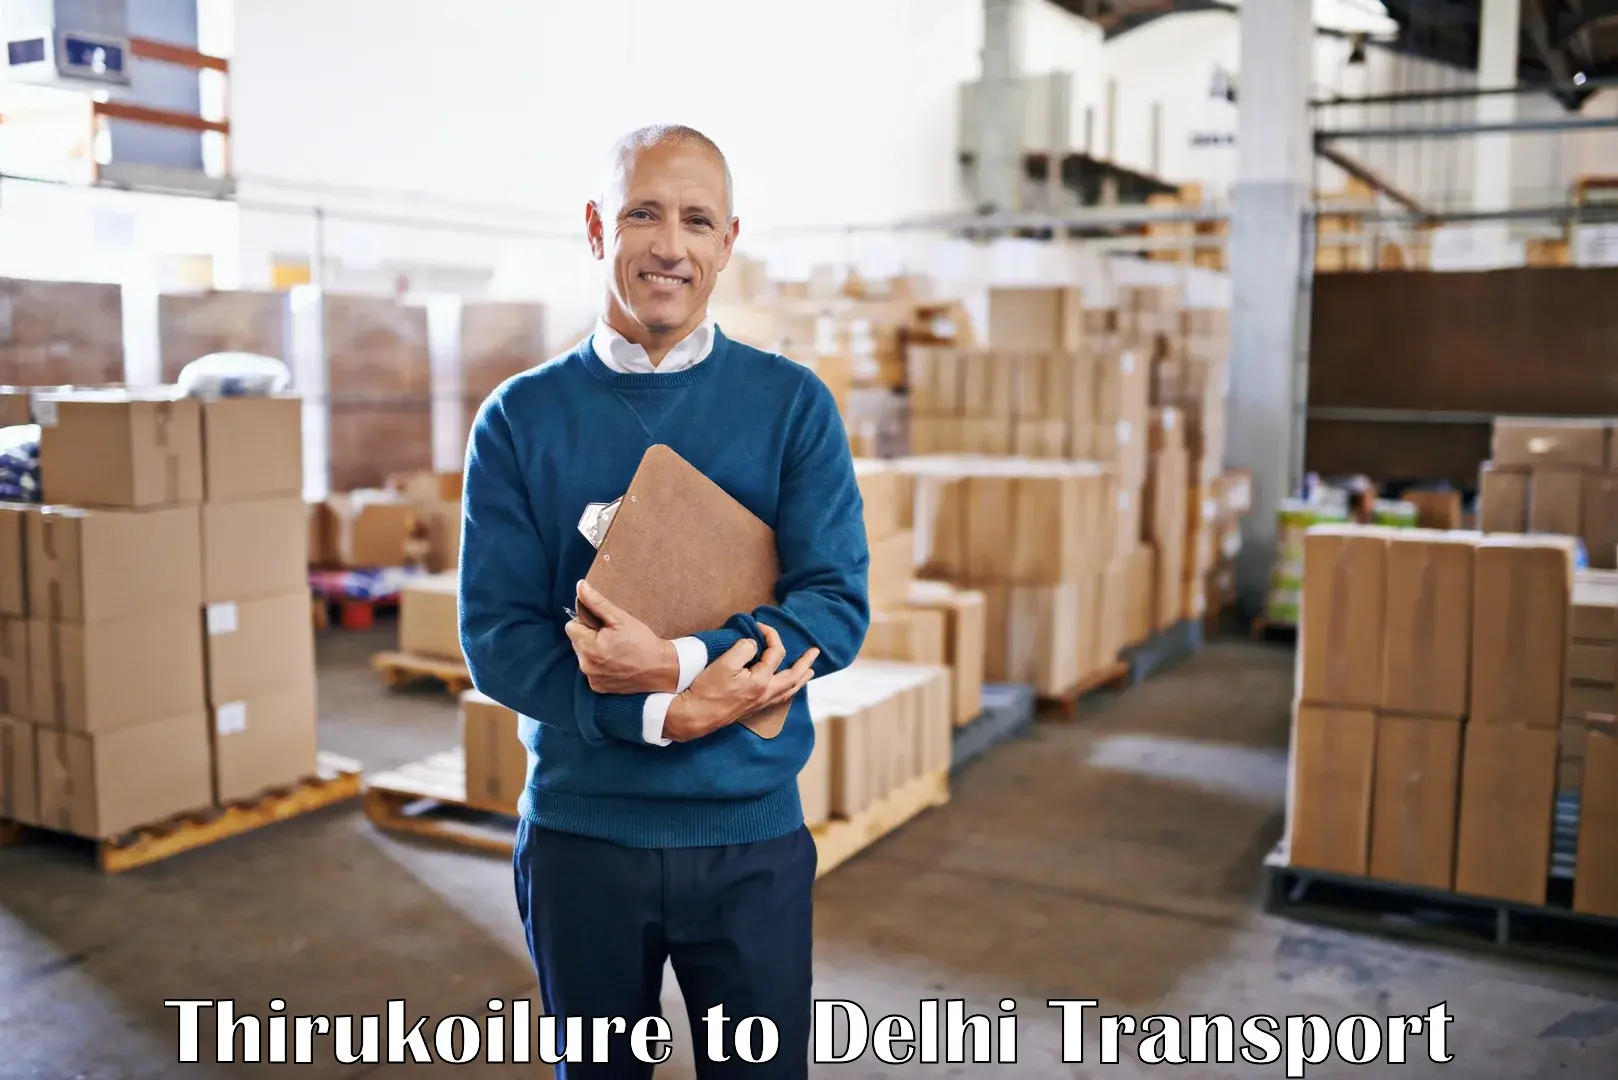 Nationwide transport services Thirukoilure to IIT Delhi